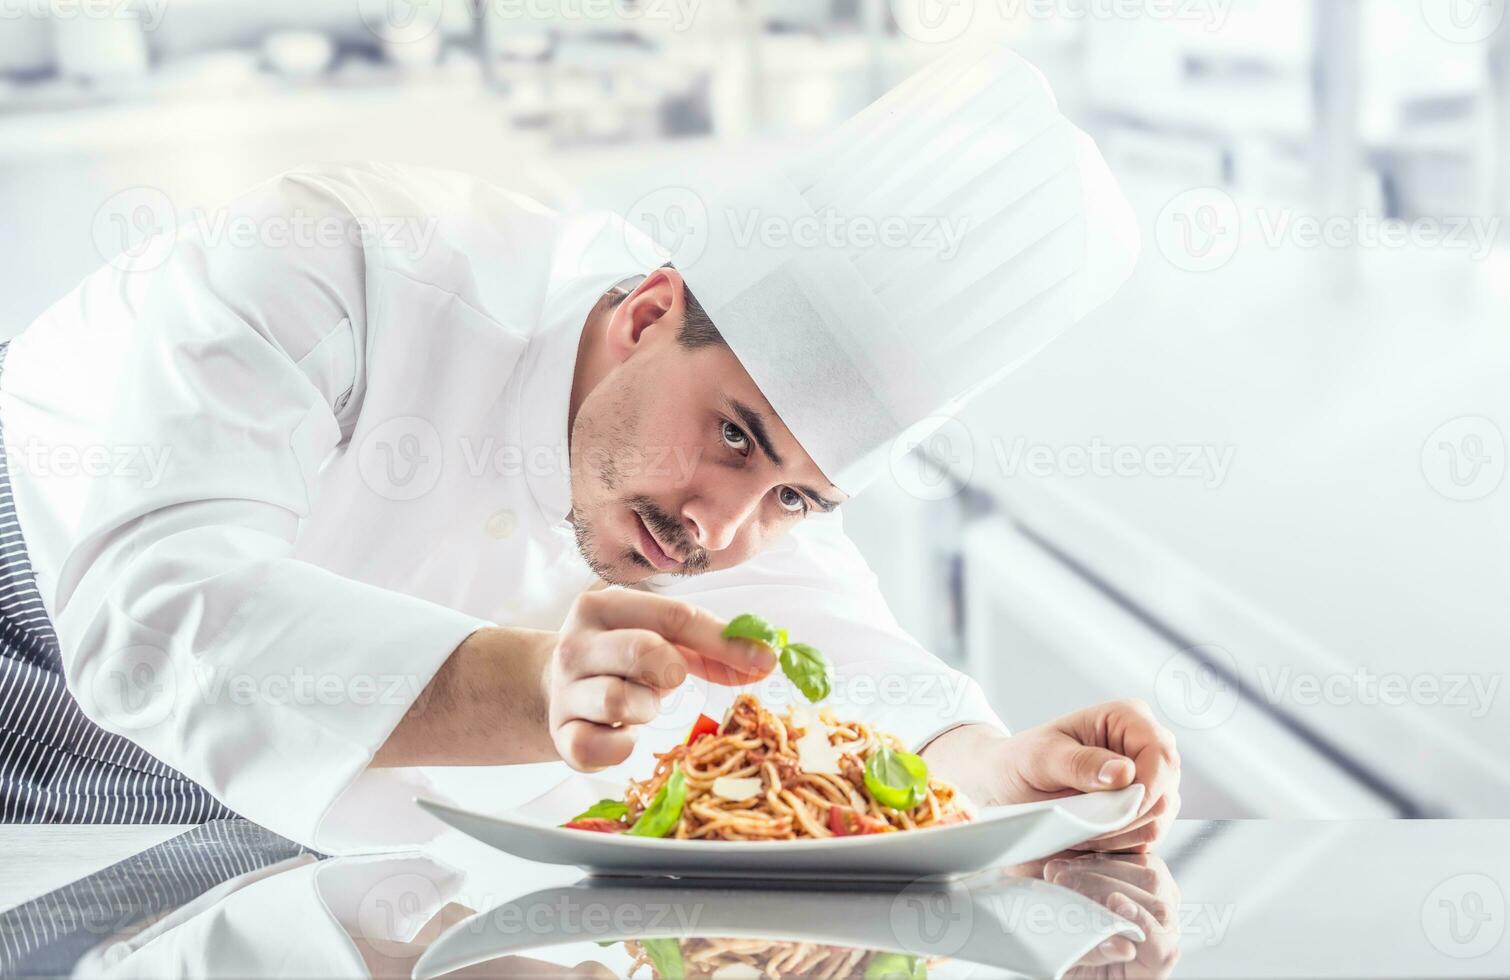 chef dans restaurant cuisine prépare et décore repas avec mains.cuisinier en train de préparer spaghetti bolognaise photo